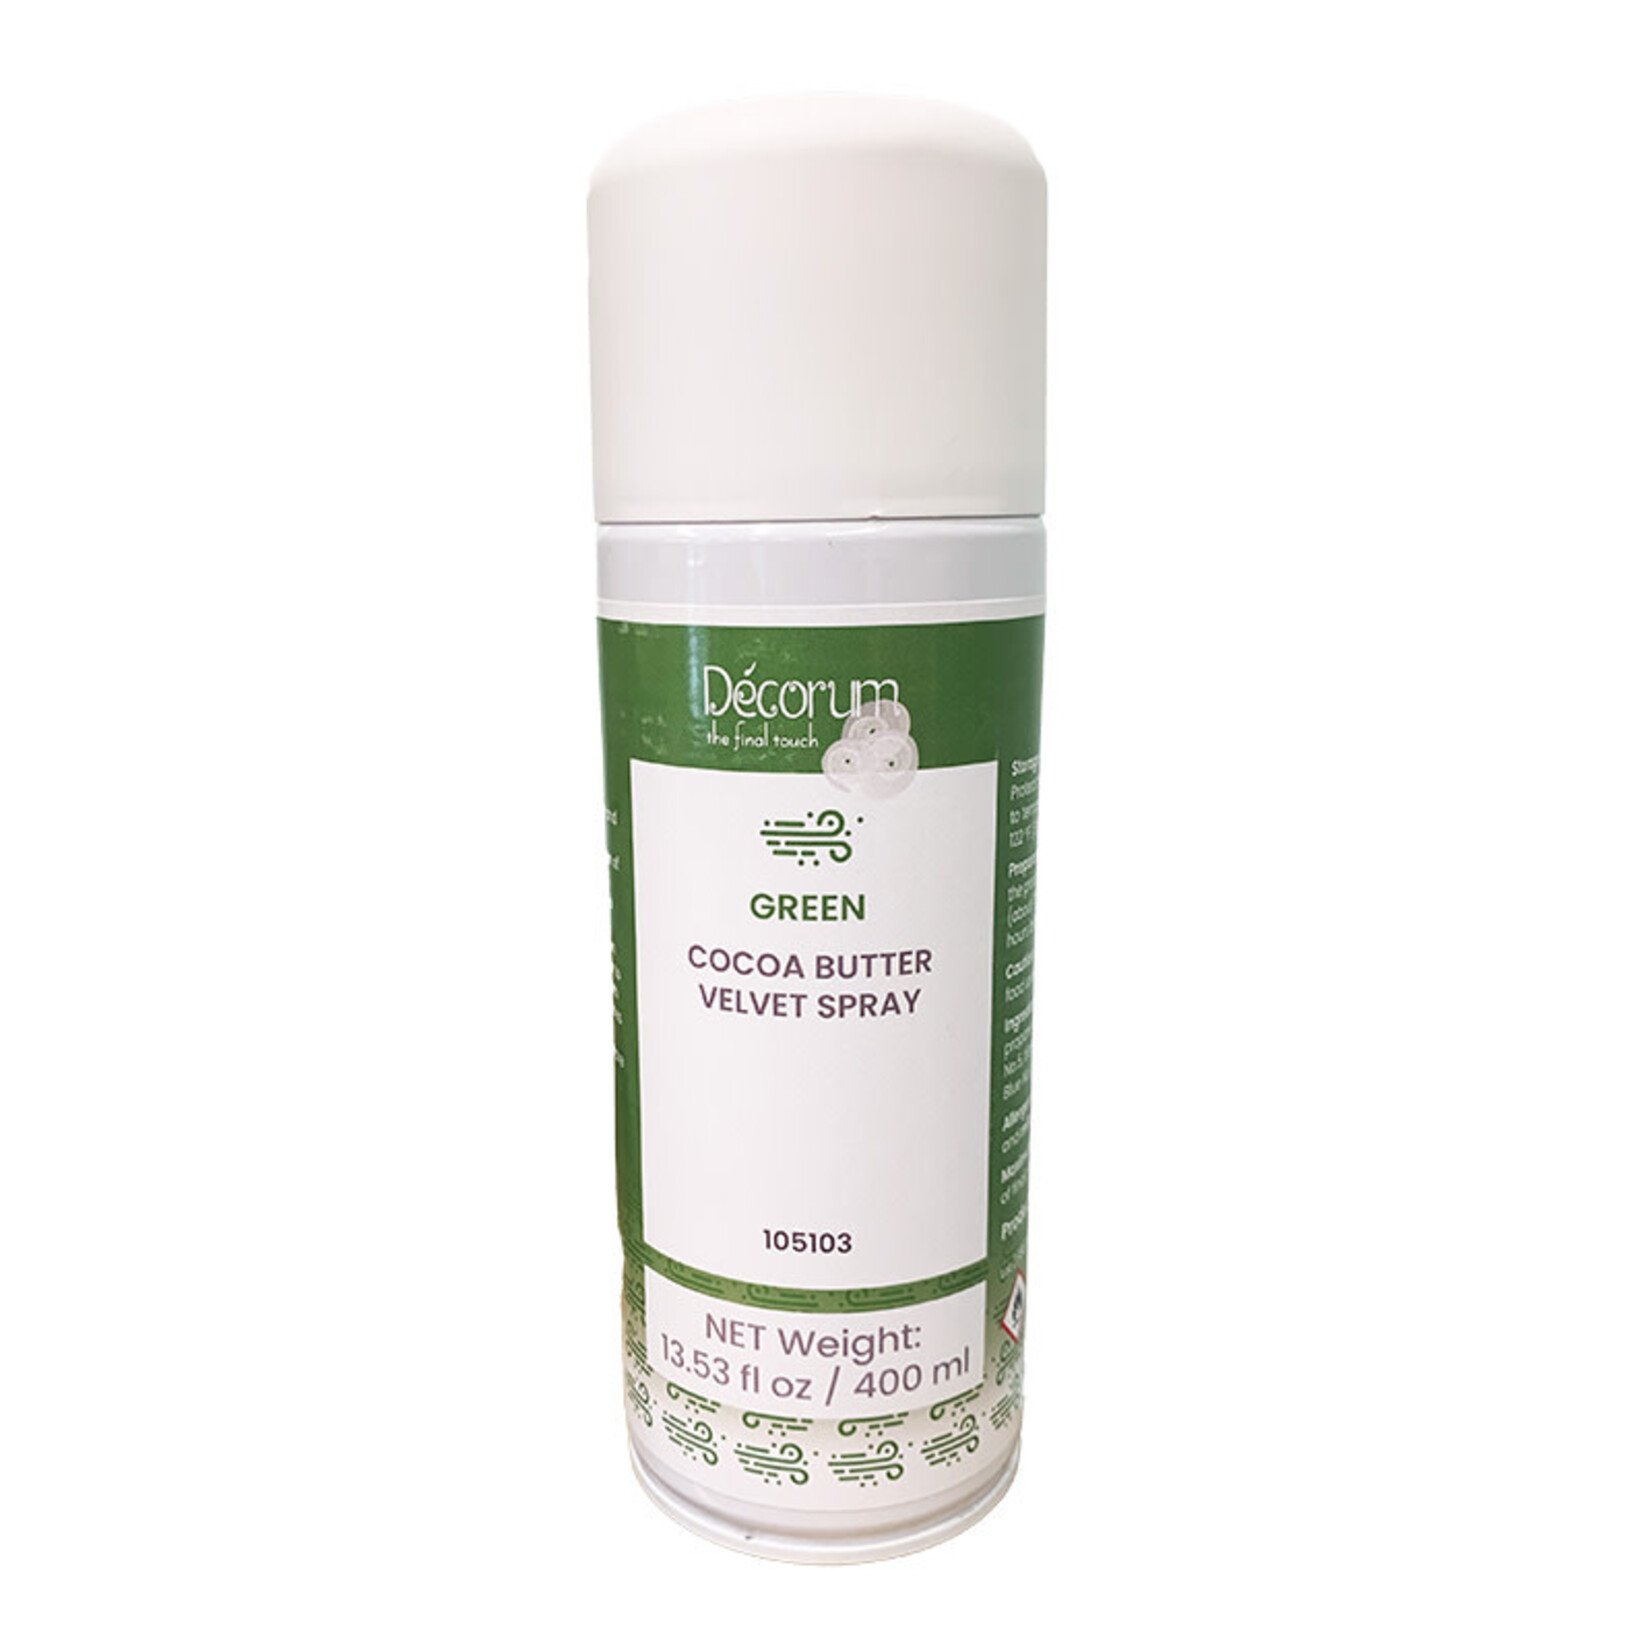 Decorum Decorum - Green Cocoa Butter Velvet Spray - 13.5 oz